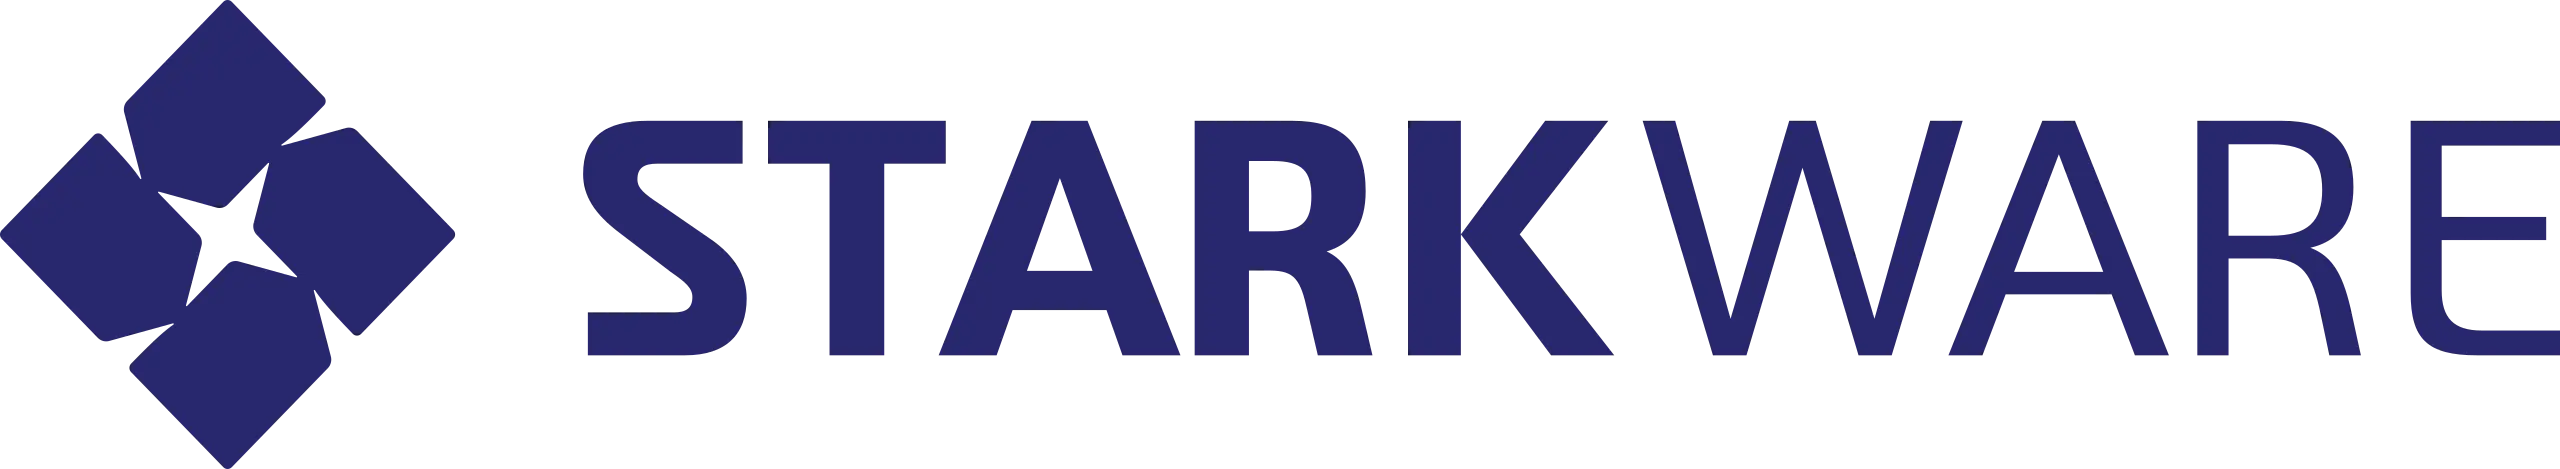 starkware-logo